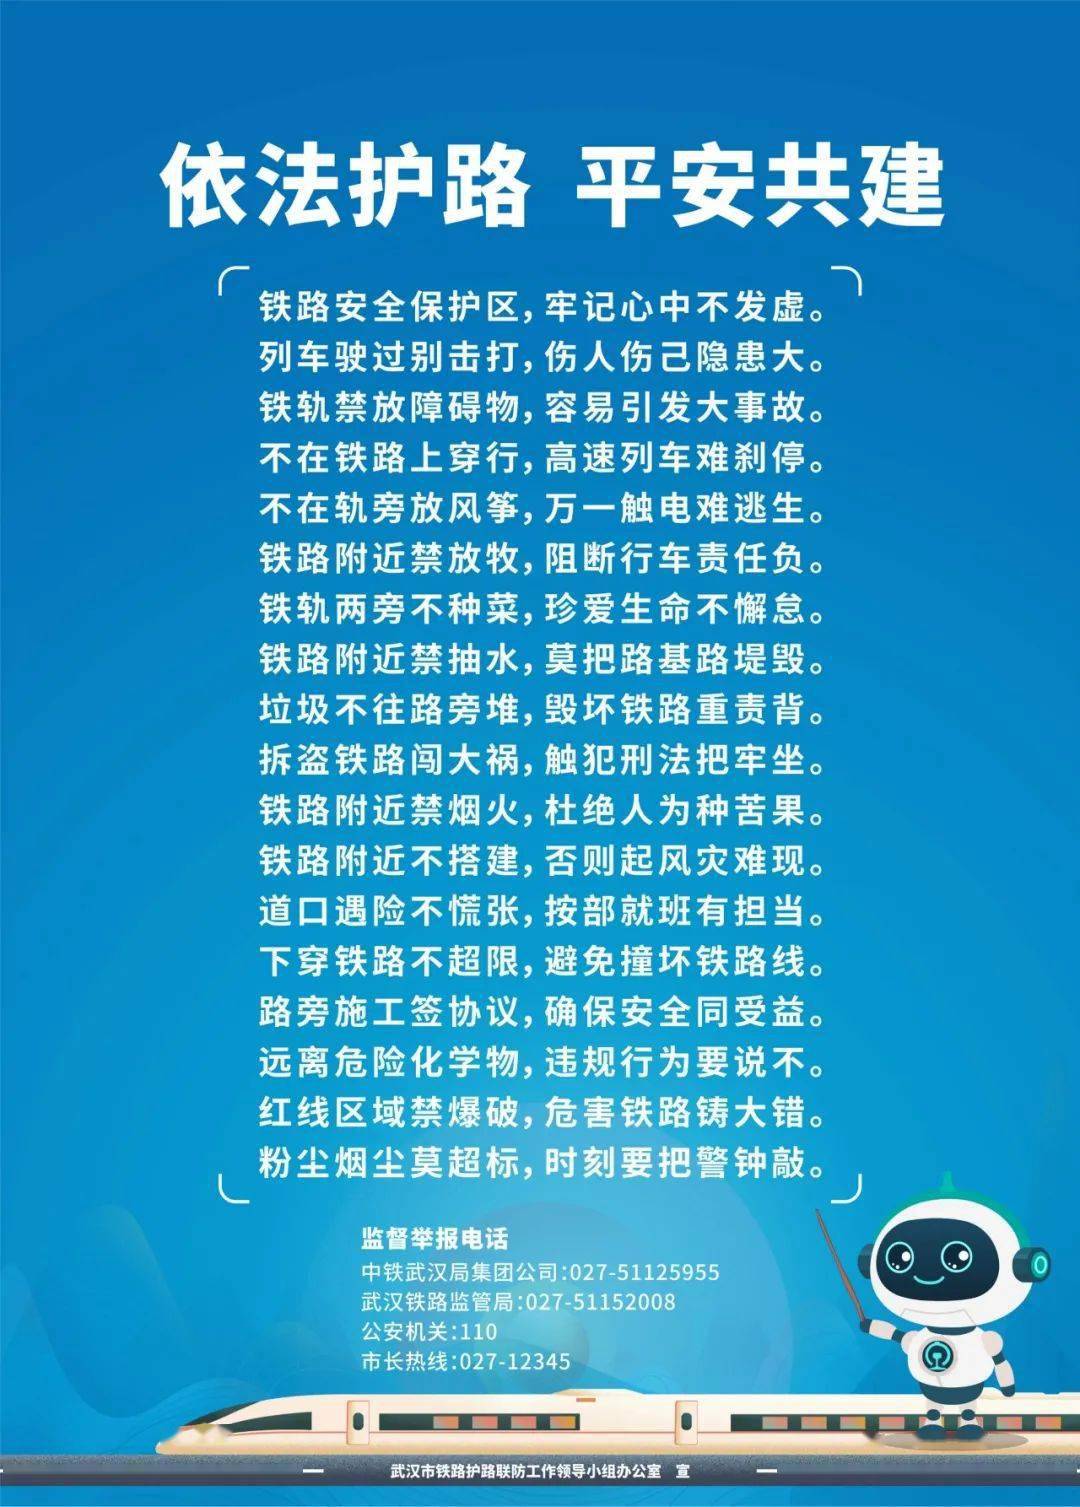 为了更好的普及宣传铁路安全知识 武汉市护路办还特意推出了动漫海报